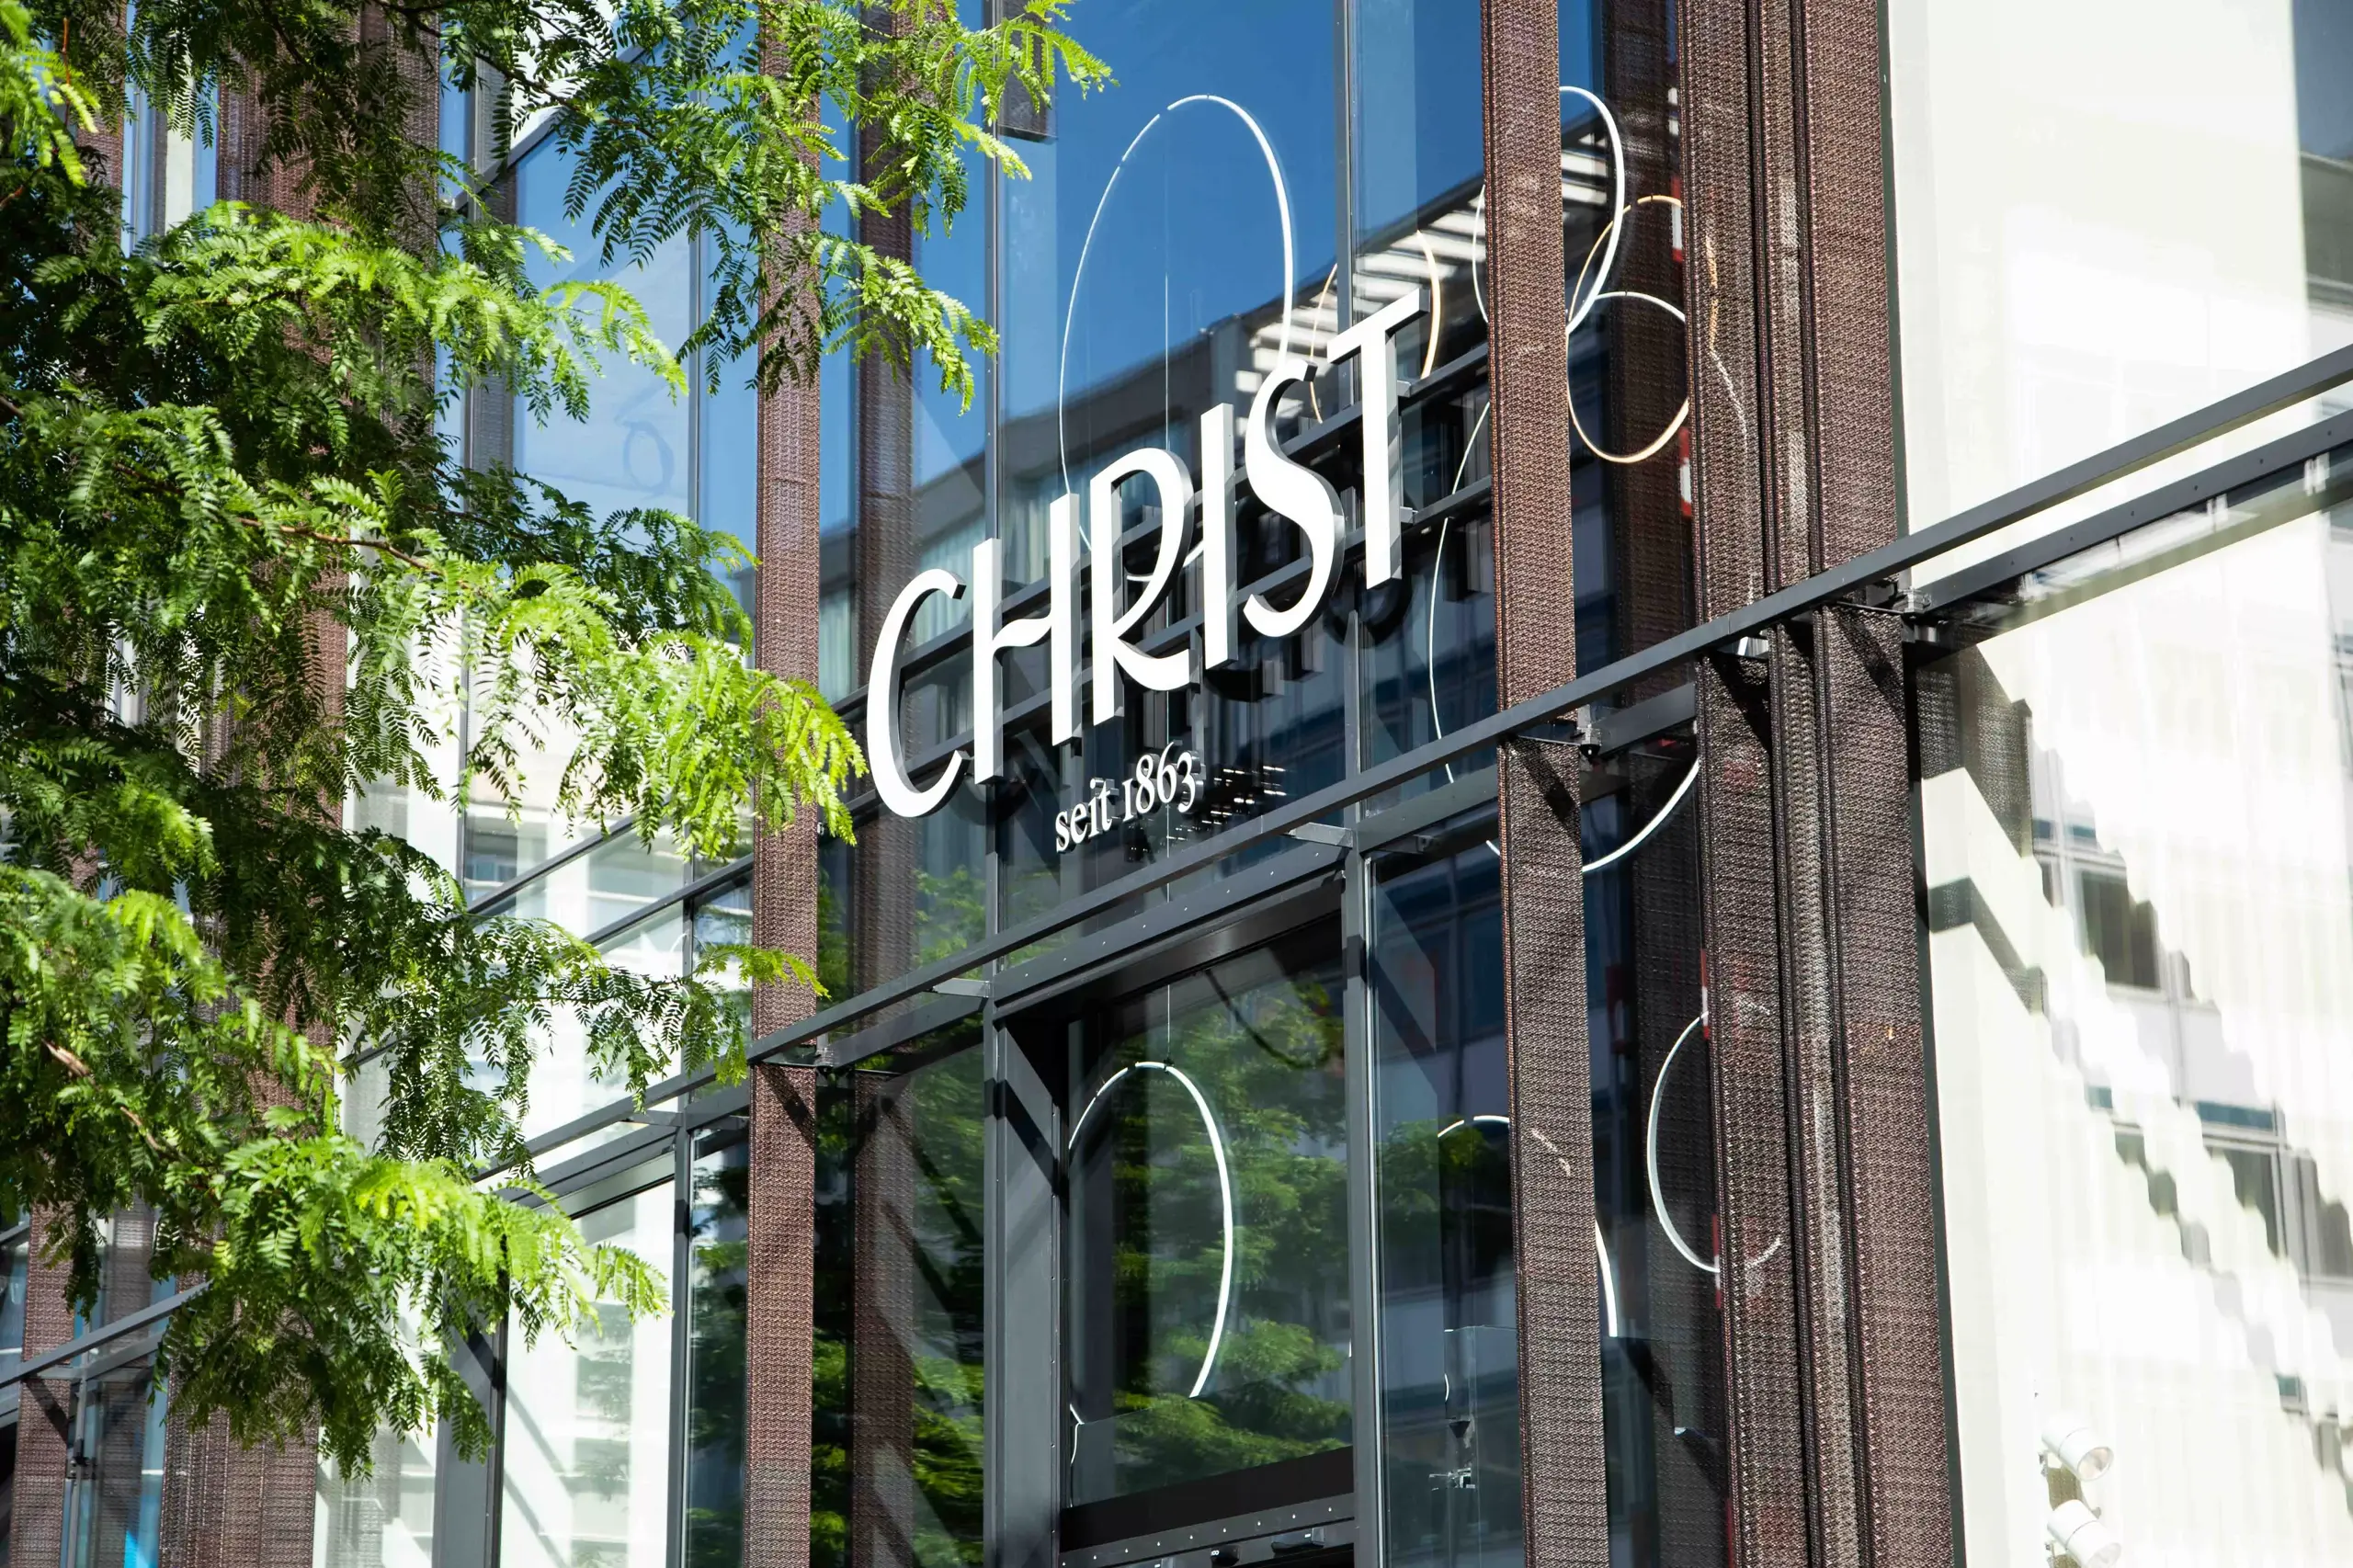 Christ Storefront Image